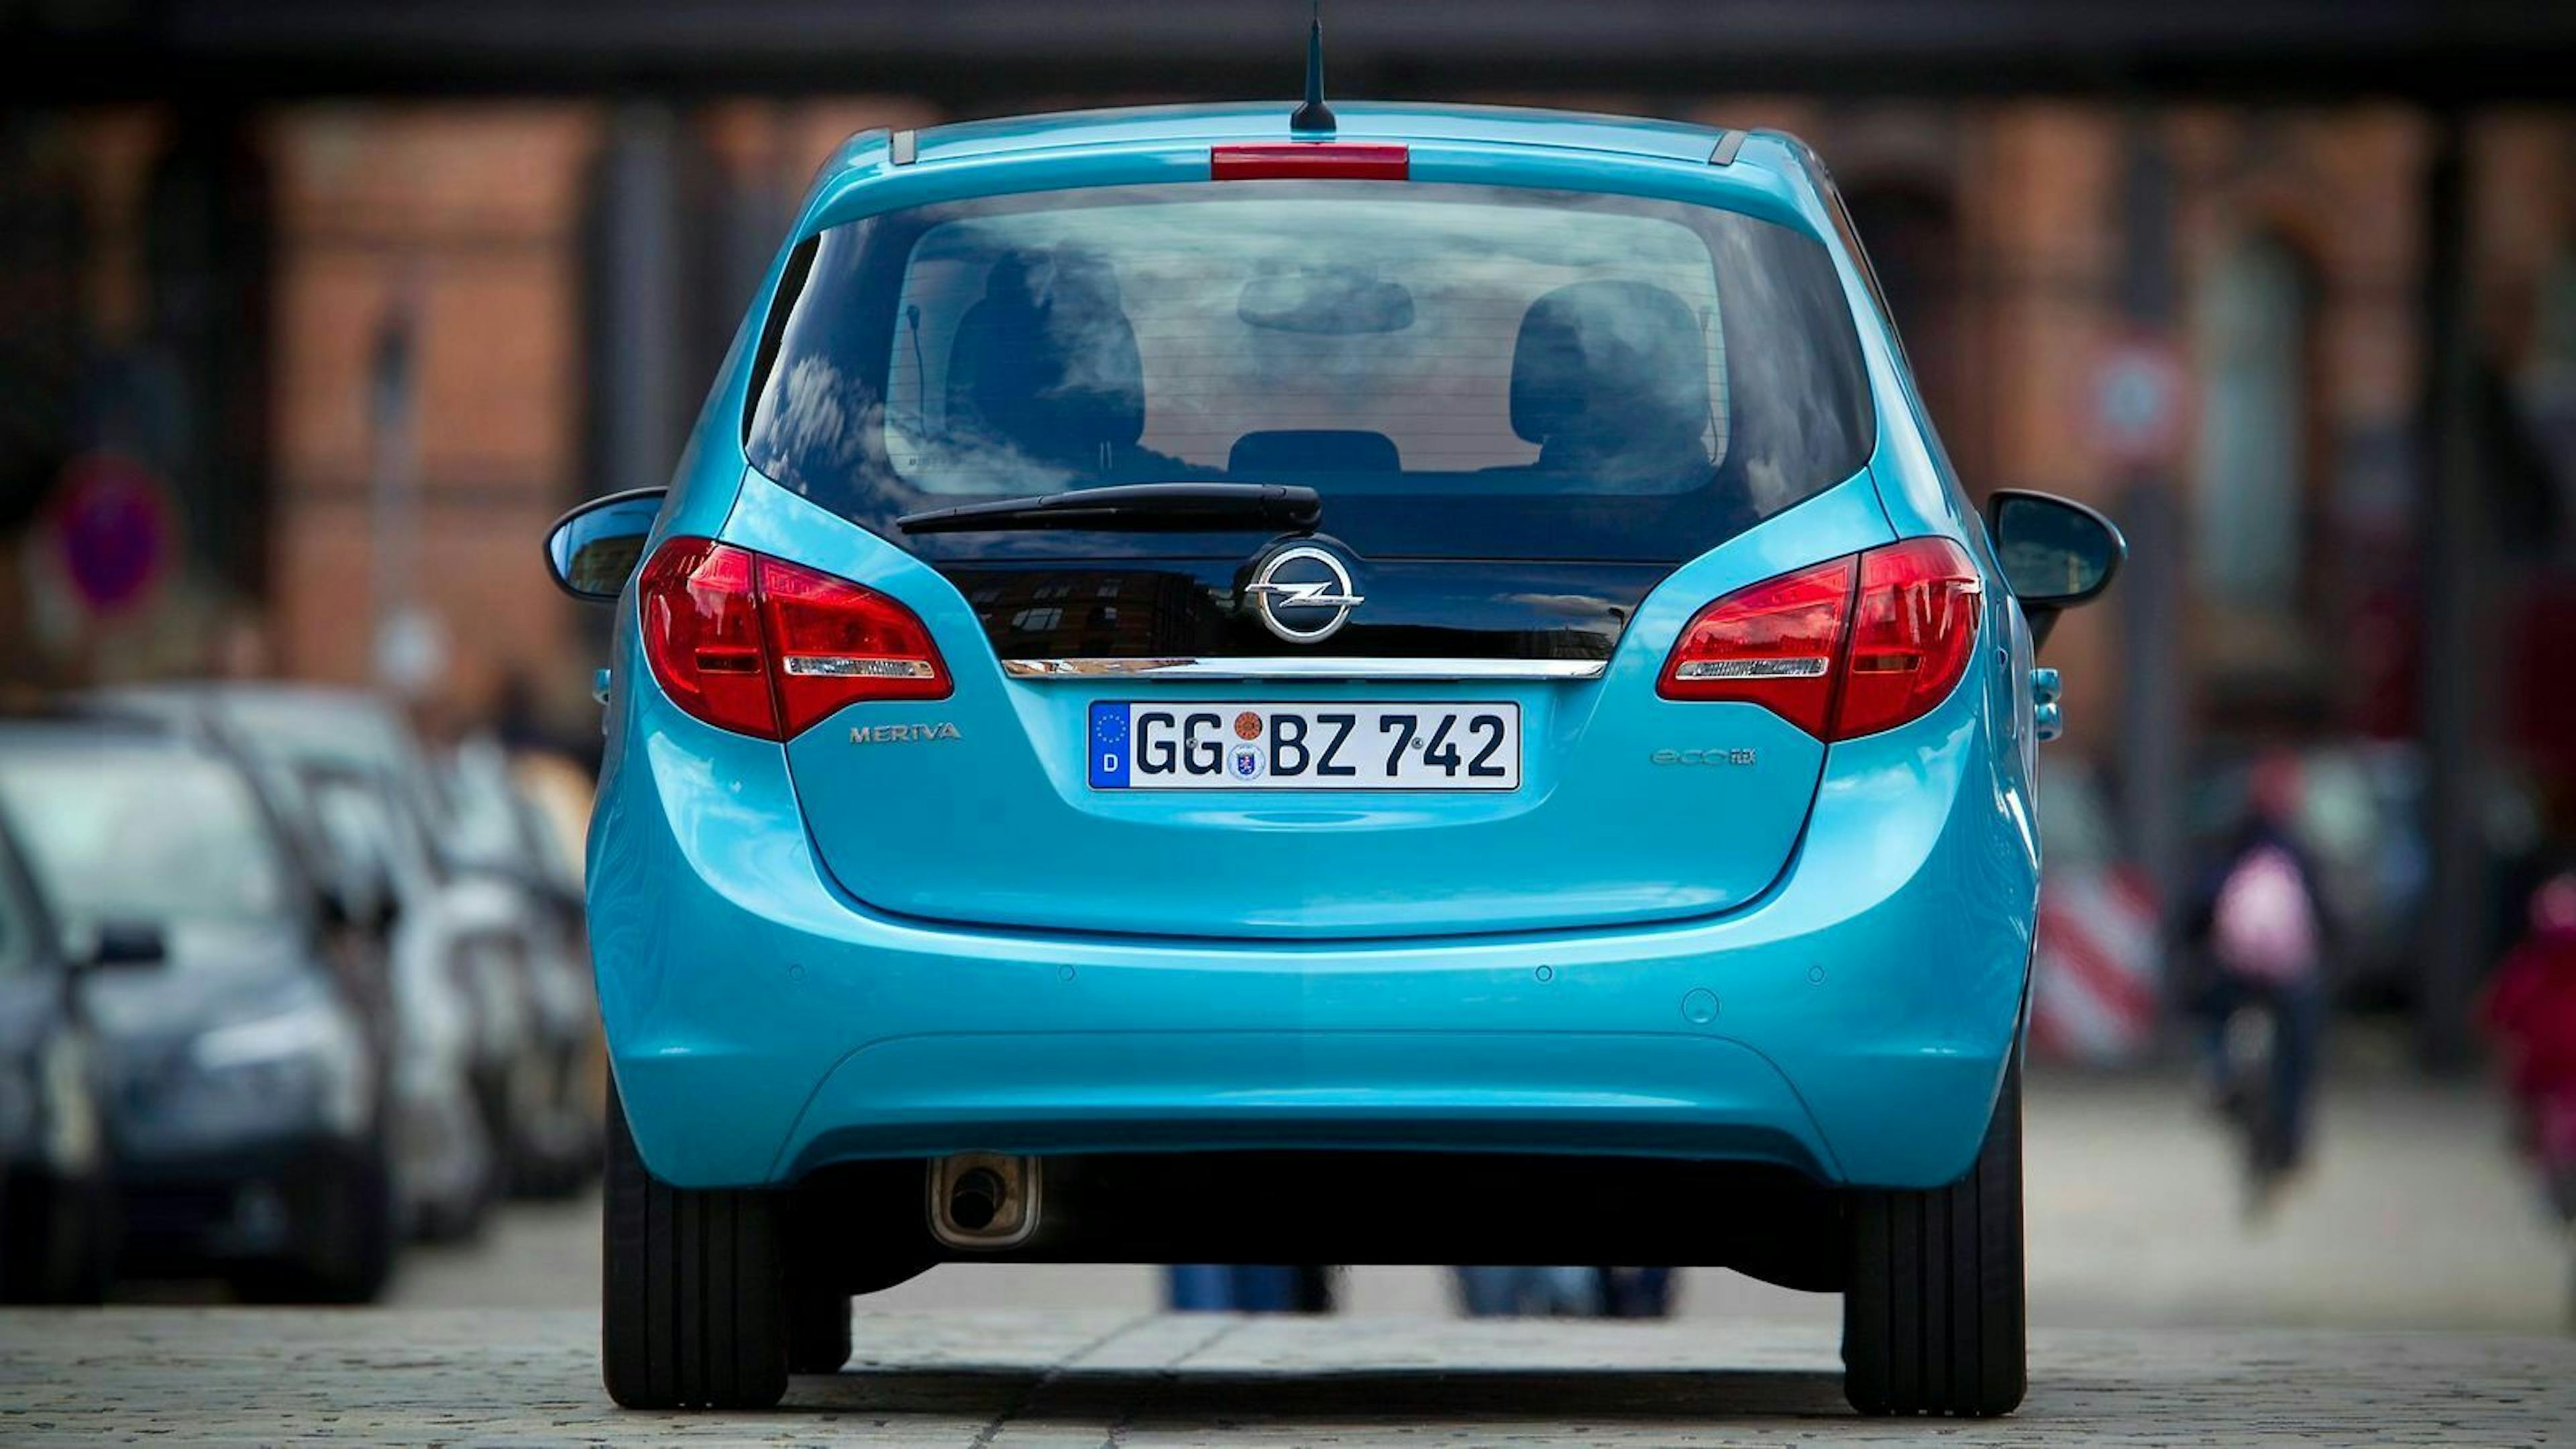 Heckansicht des Opel Meriva